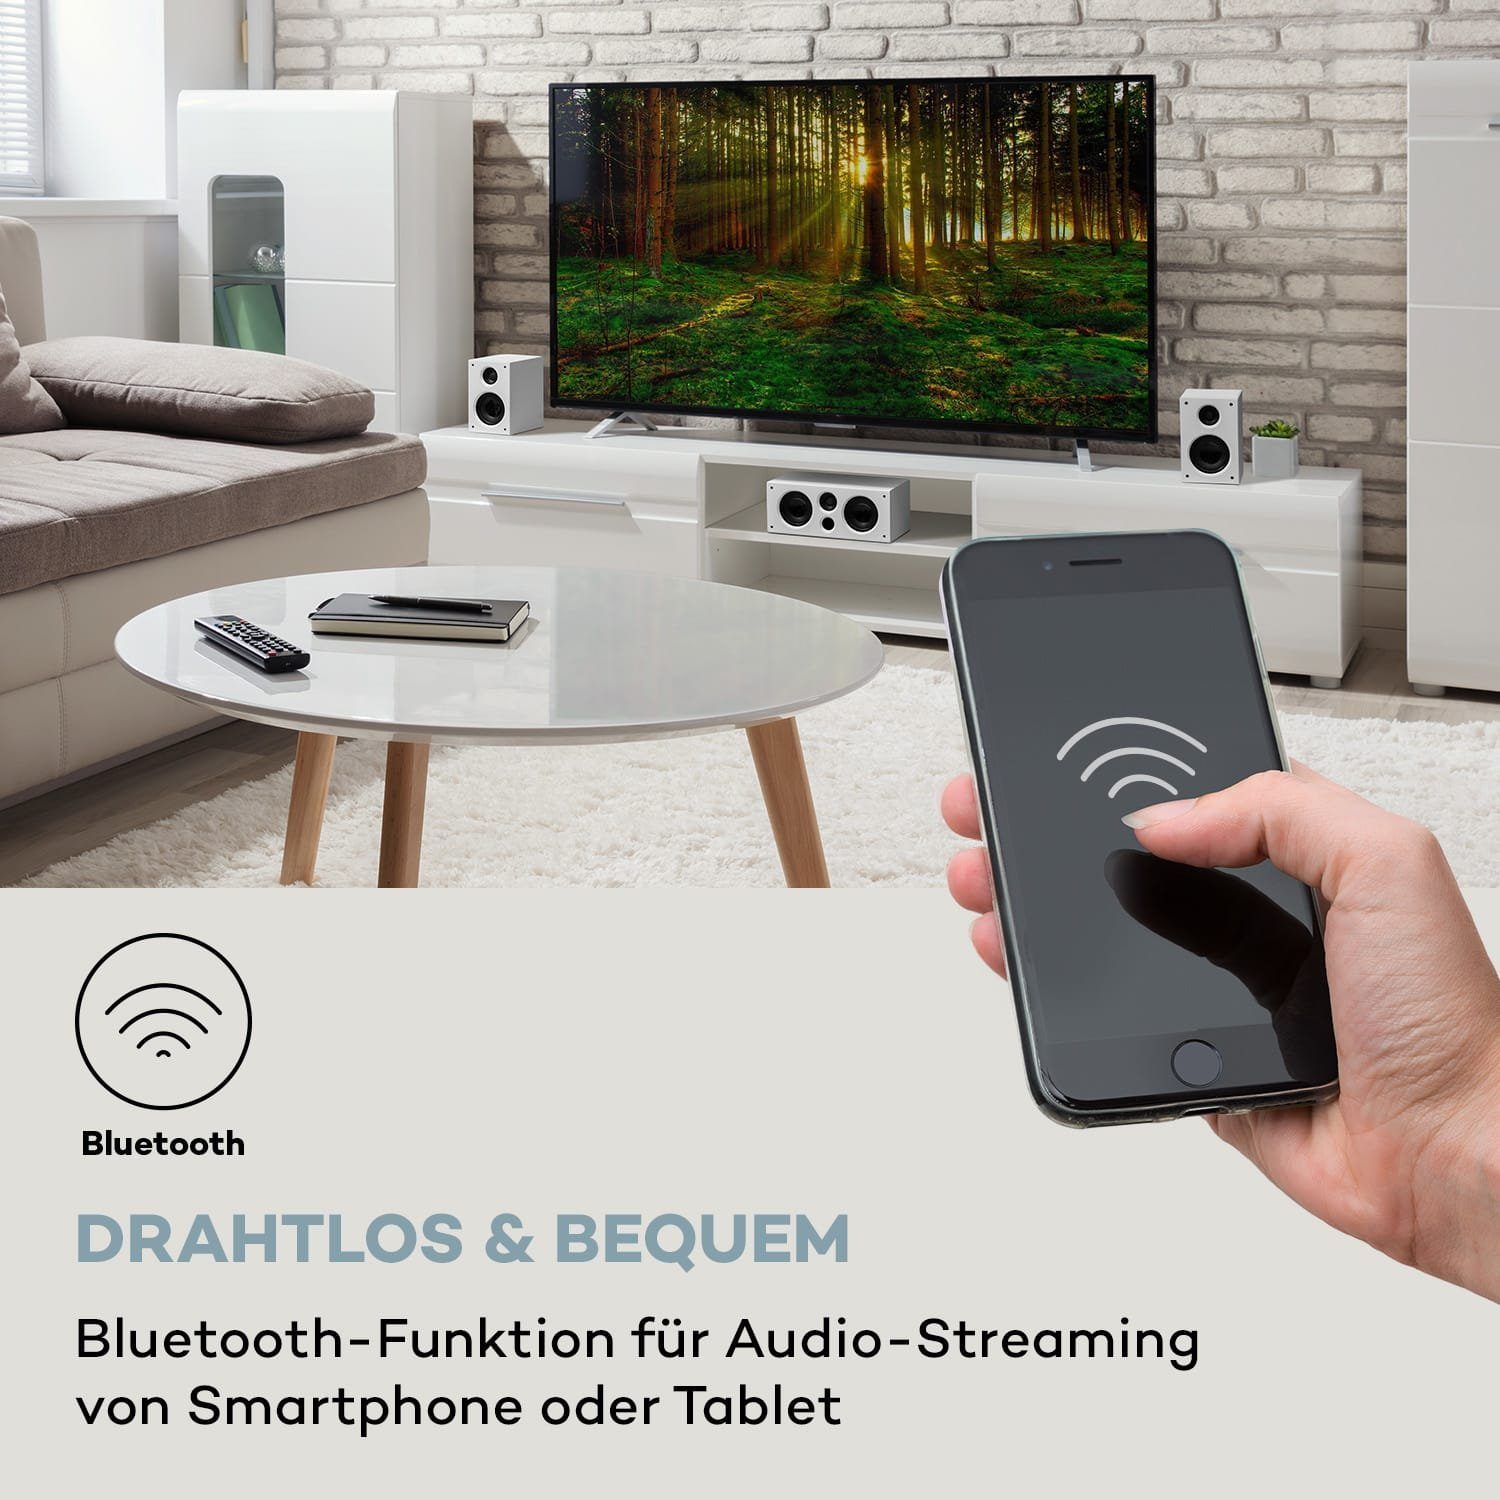 (Bluetooth) Areal 525 Lautsprecher Auna System DG Weiß 5.1 5.1-Surround-System